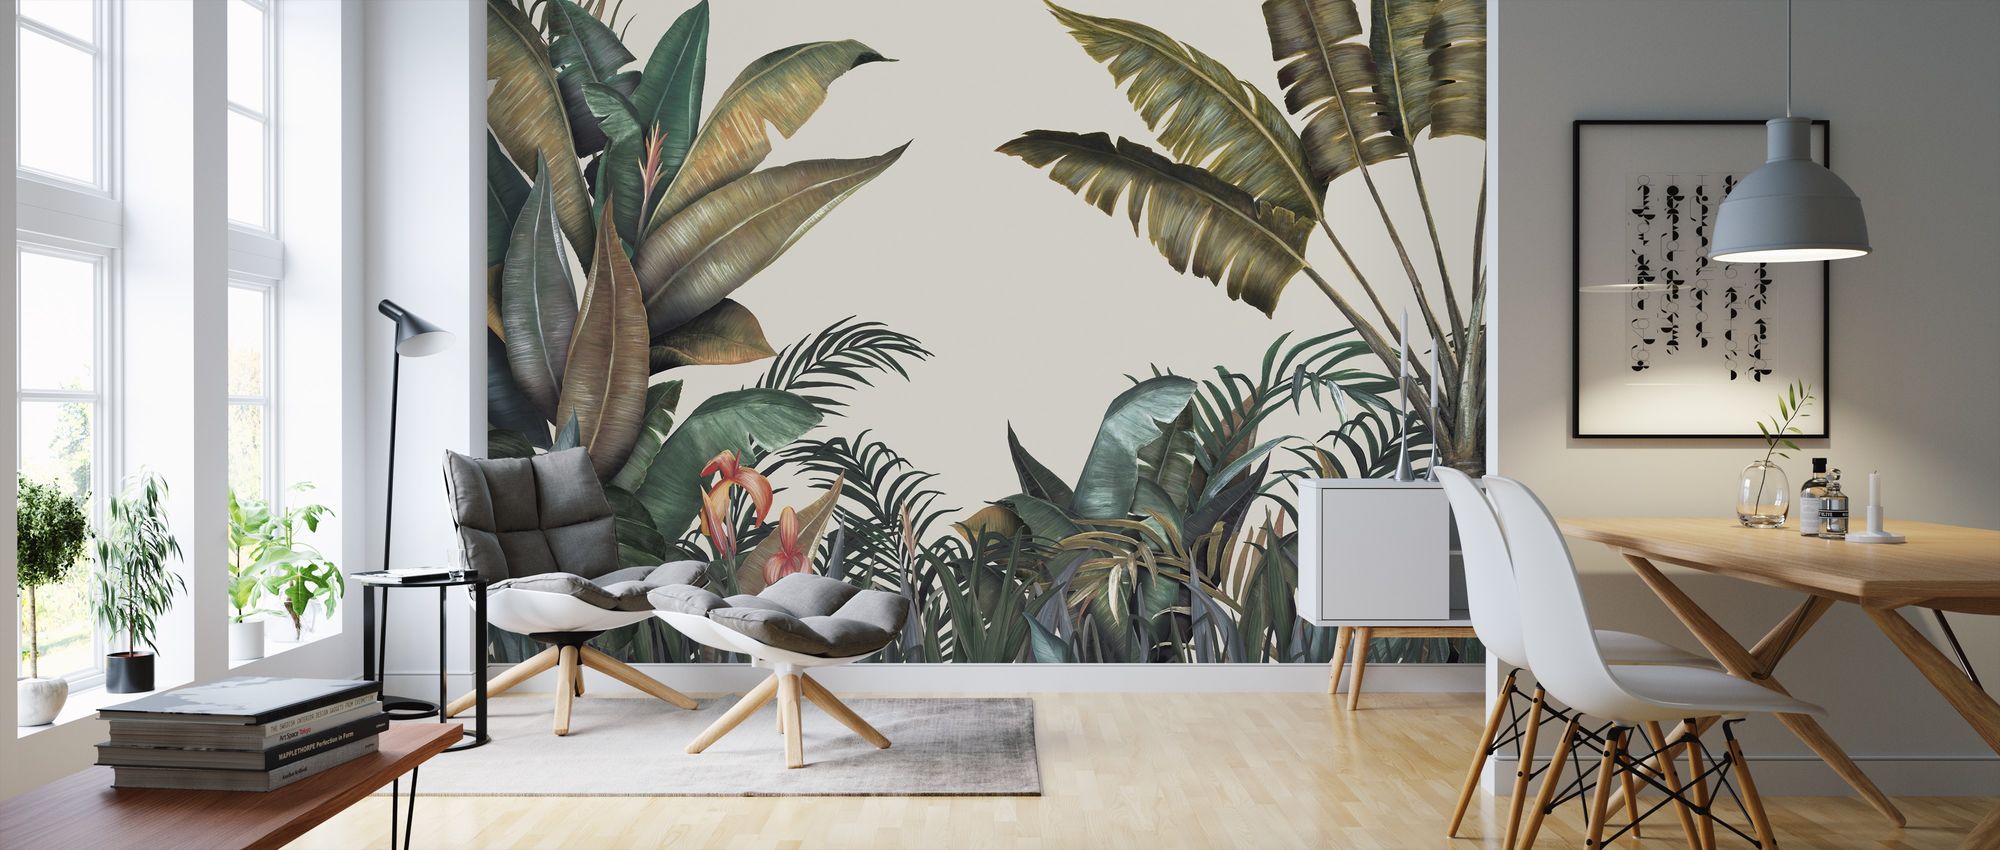 8 Ide Dekorasi Tropical Vibes untuk Berbagai Ruangan di Rumah